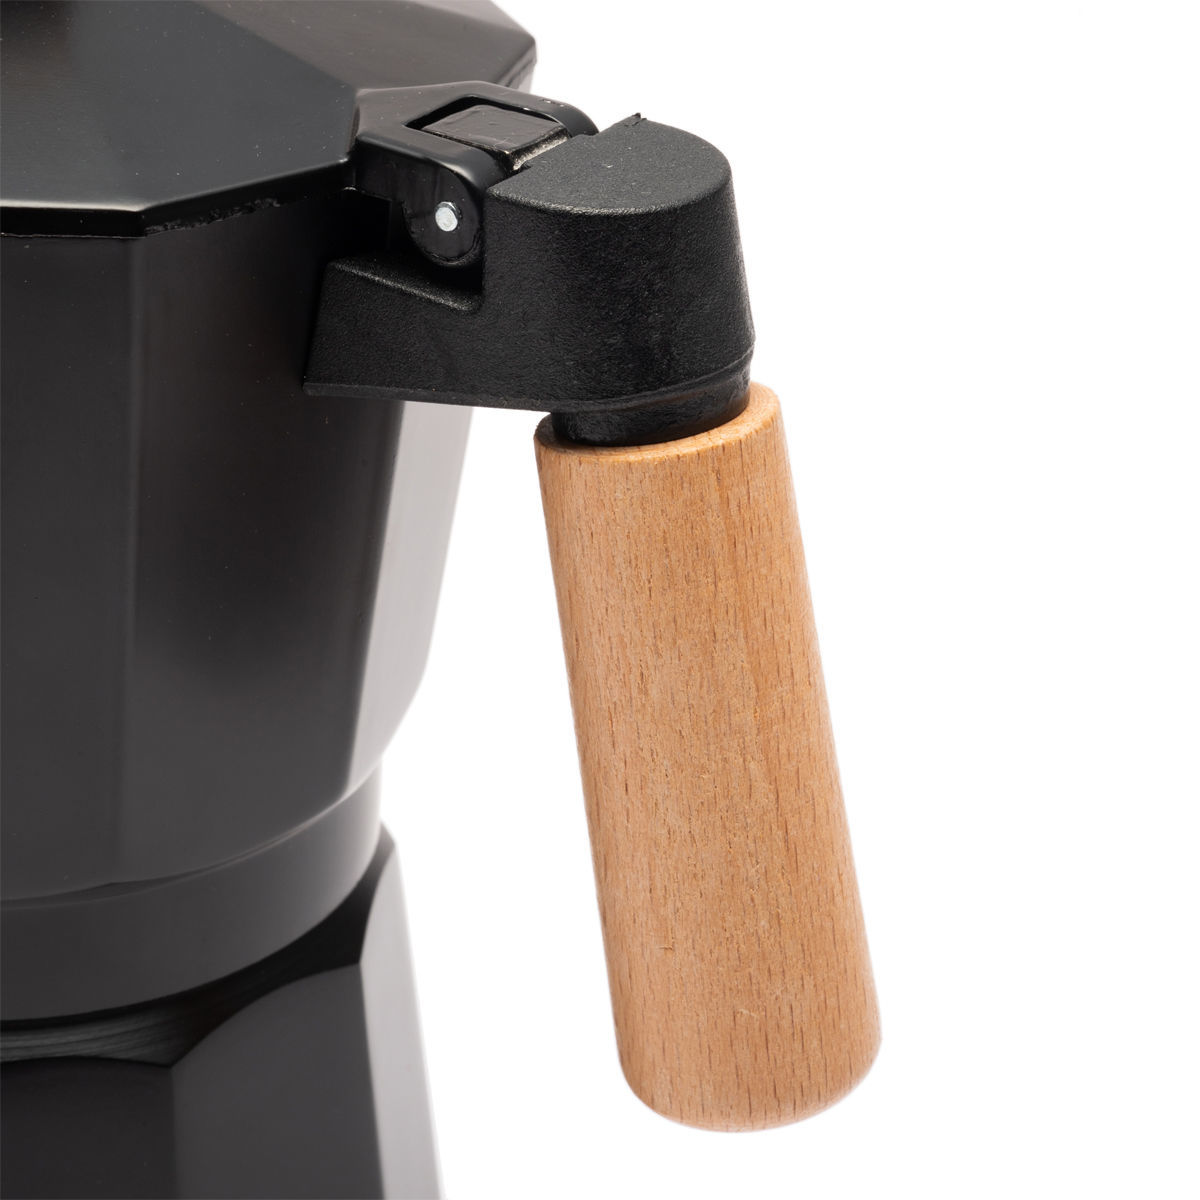 Μπρίκι Espresso 300ml Αλουμινίου Estia Black 01-20651